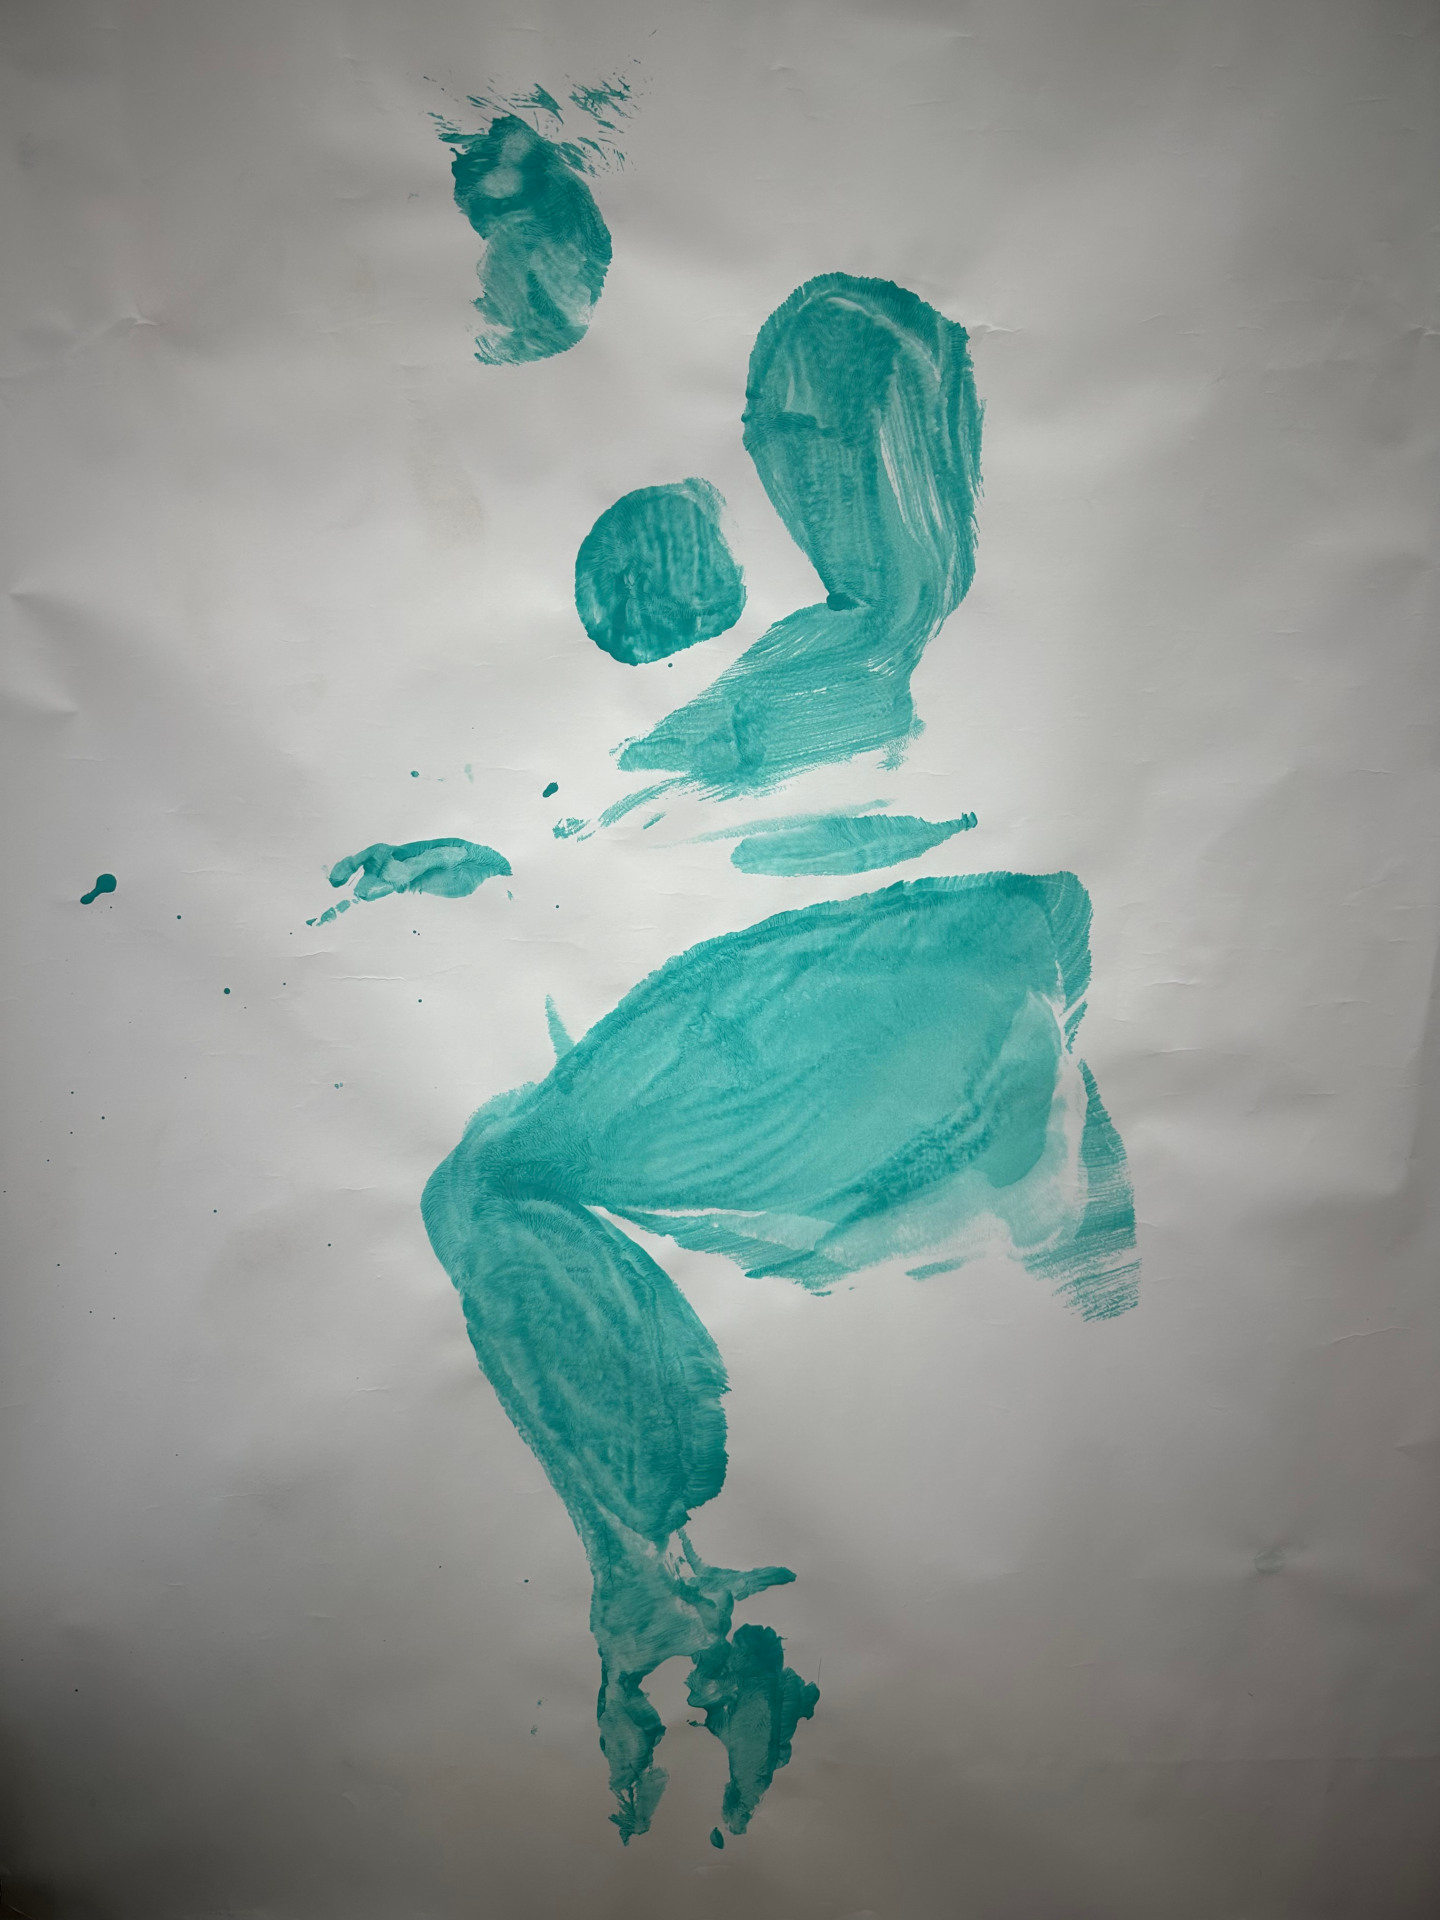 Canvas with blue human body lying sideways